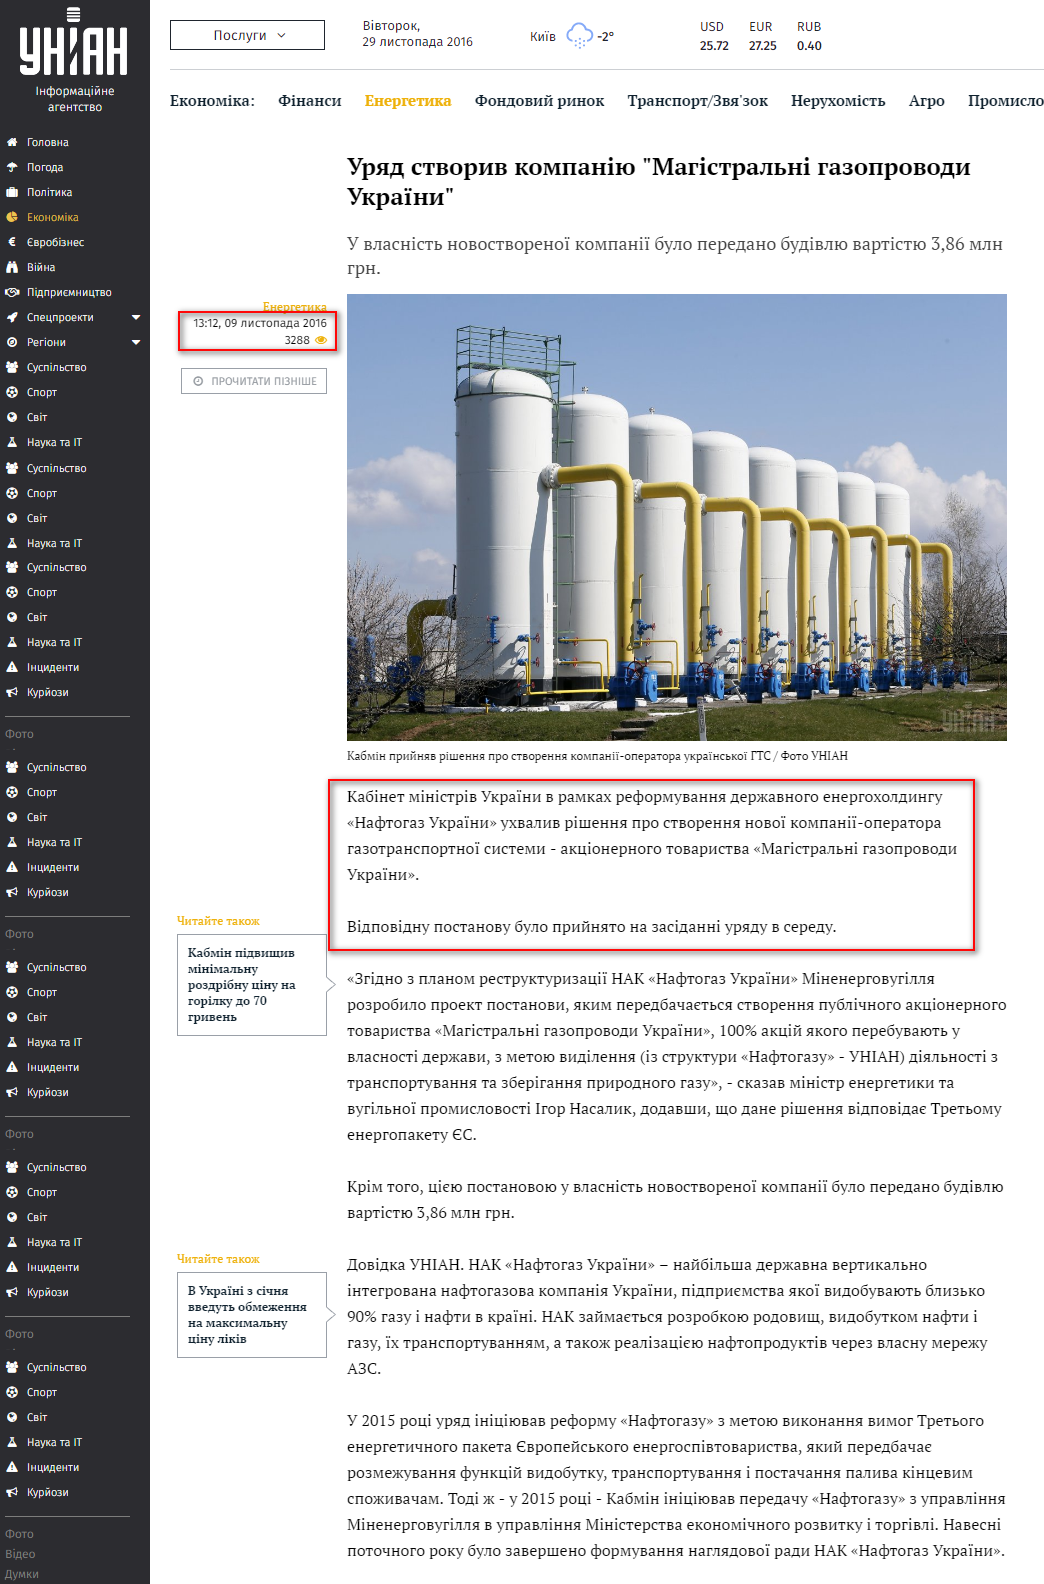 http://economics.unian.ua/energetics/1614356-uryad-stvoriv-kompaniyu-magistralni-gazoprovodi-ukrajini.html